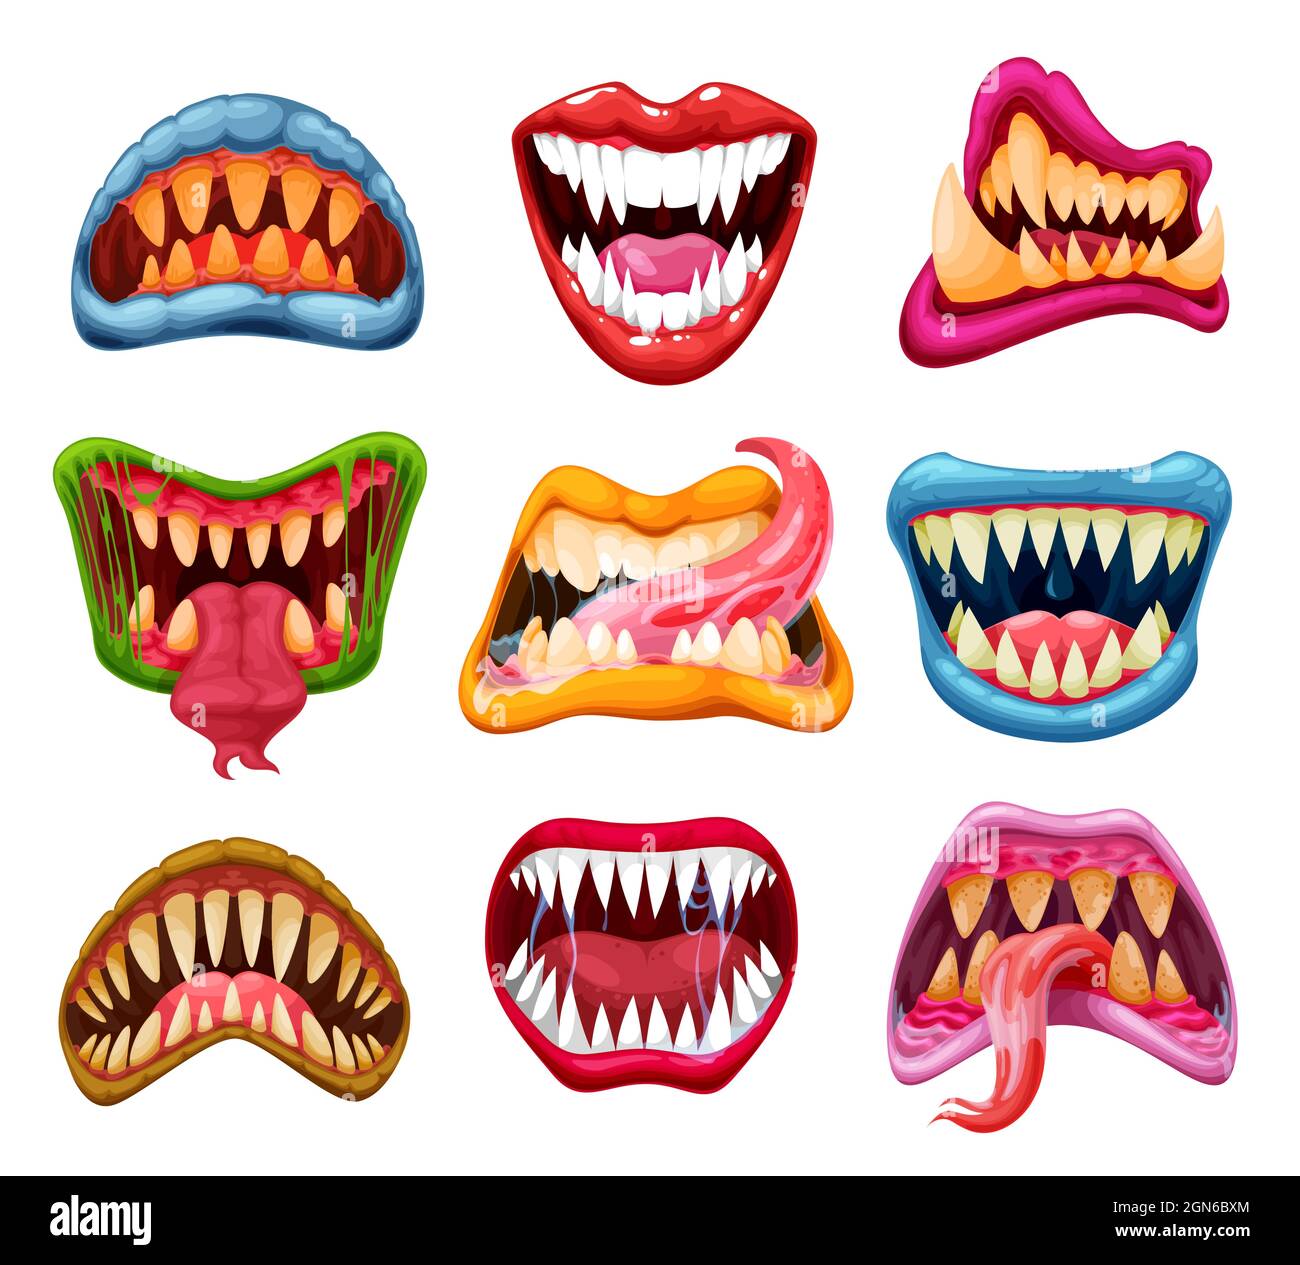 Mandíbulas y bocas de monstruos con dientes y lenguas de dibujos animados.  Vector Halloween monstruo o vampiro sonrisas, bestia alienígena miedo,  demonio de terror, dracula o zombie con espeluznantes fangos, verde limo